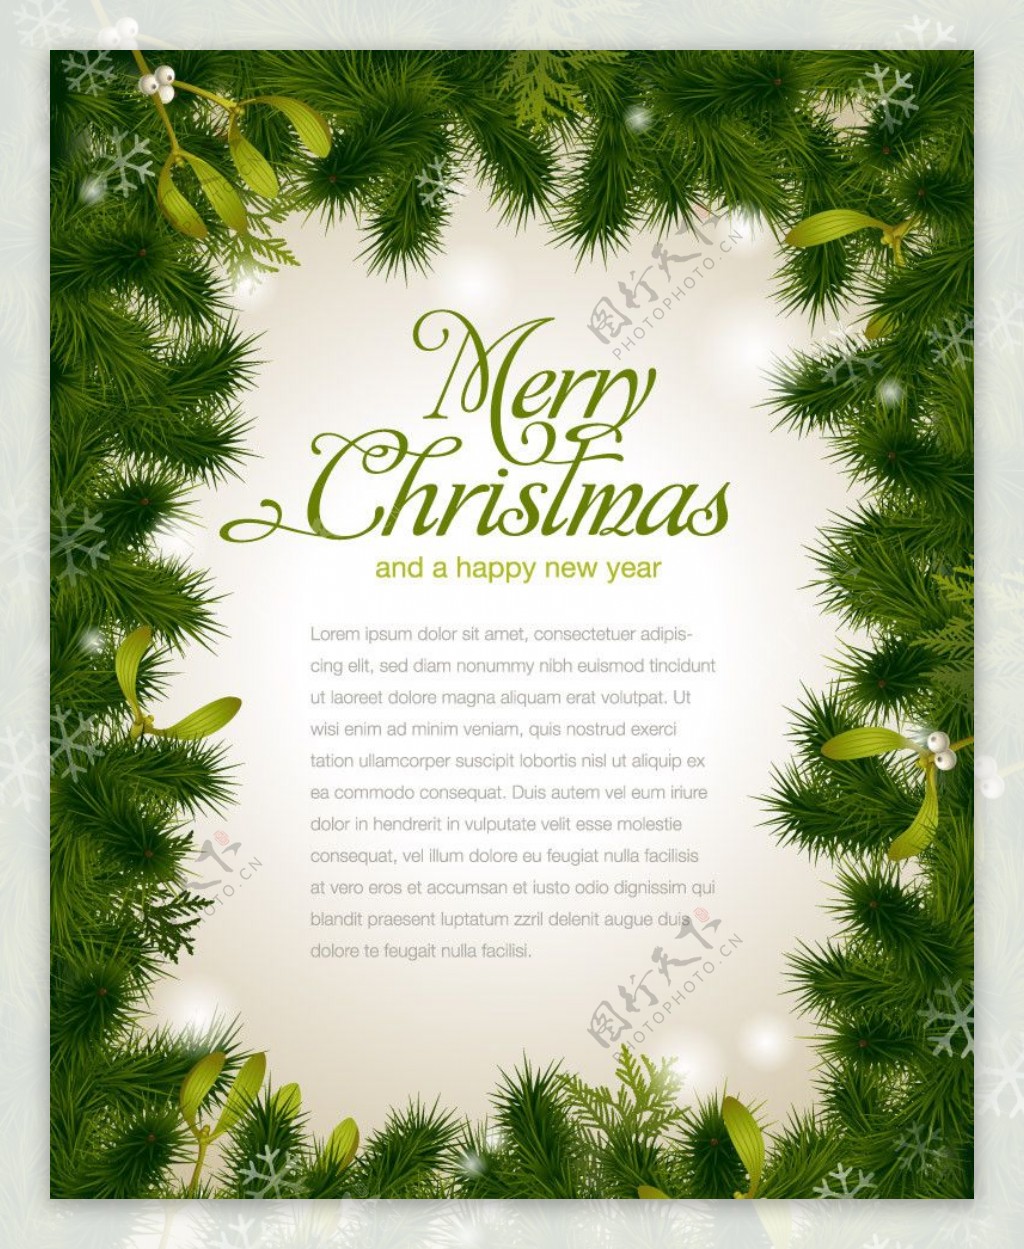 松树枝边框圣诞背景图片